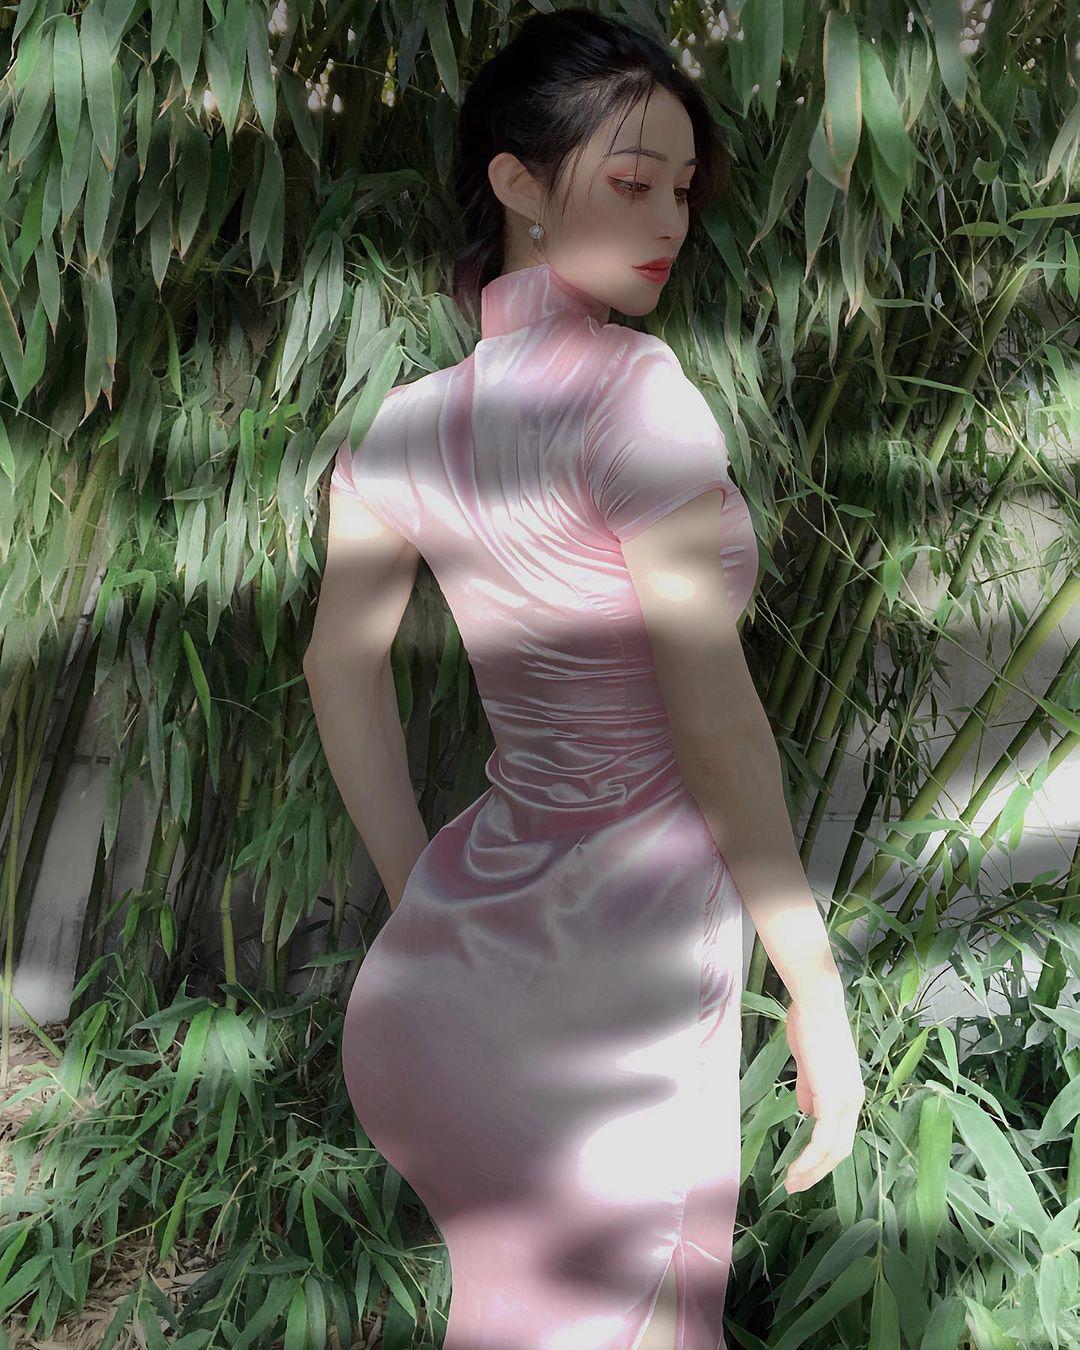 "Thiên thần cơ bắp hot nhất Trung Quốc" diện váy bó sát tôn đường cong quyến rũ - 7